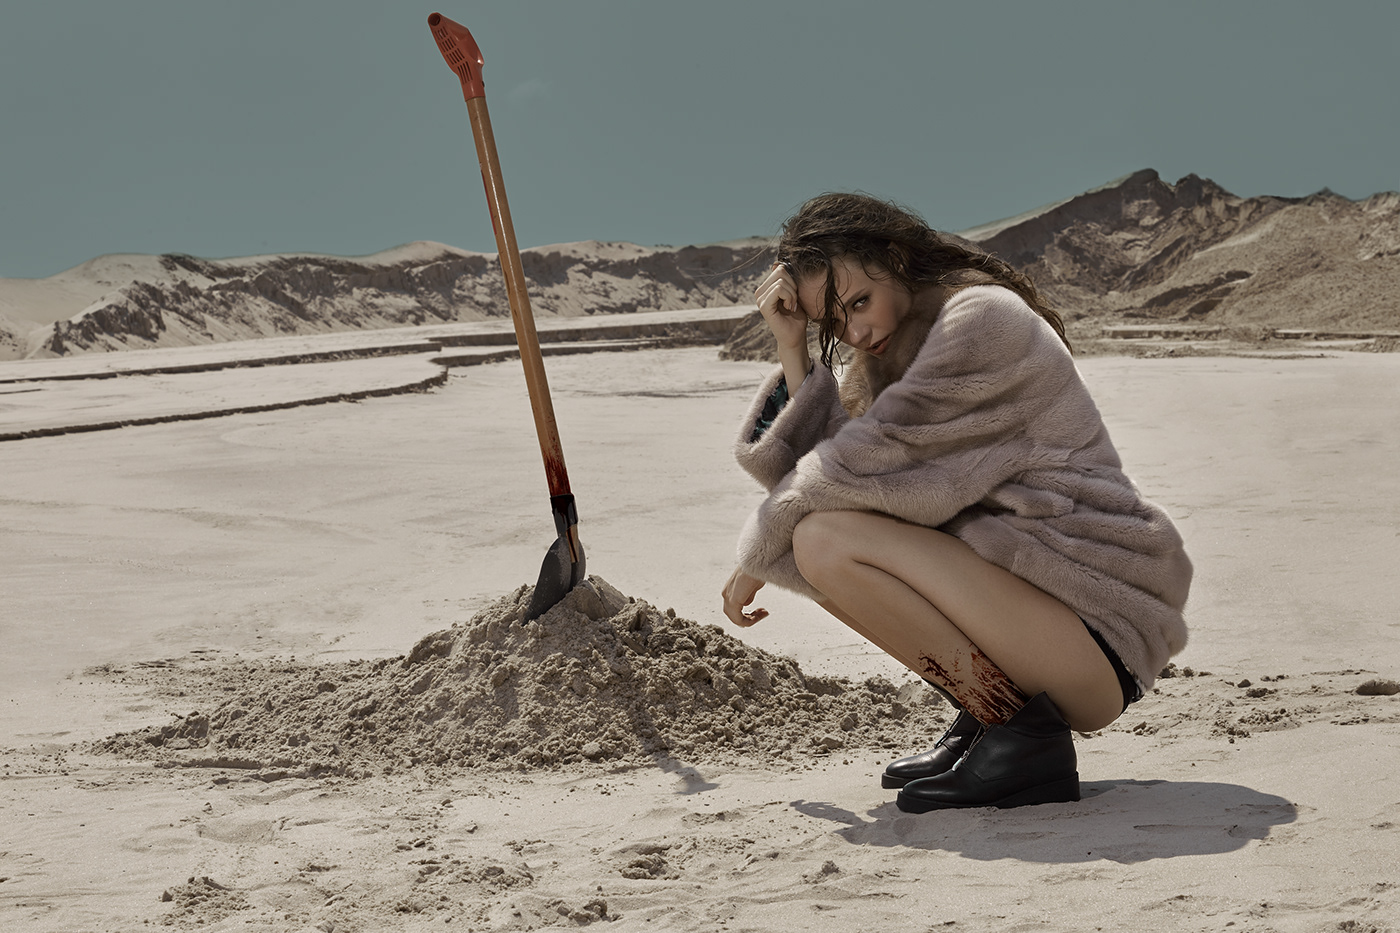 sand shovel blood girl desert